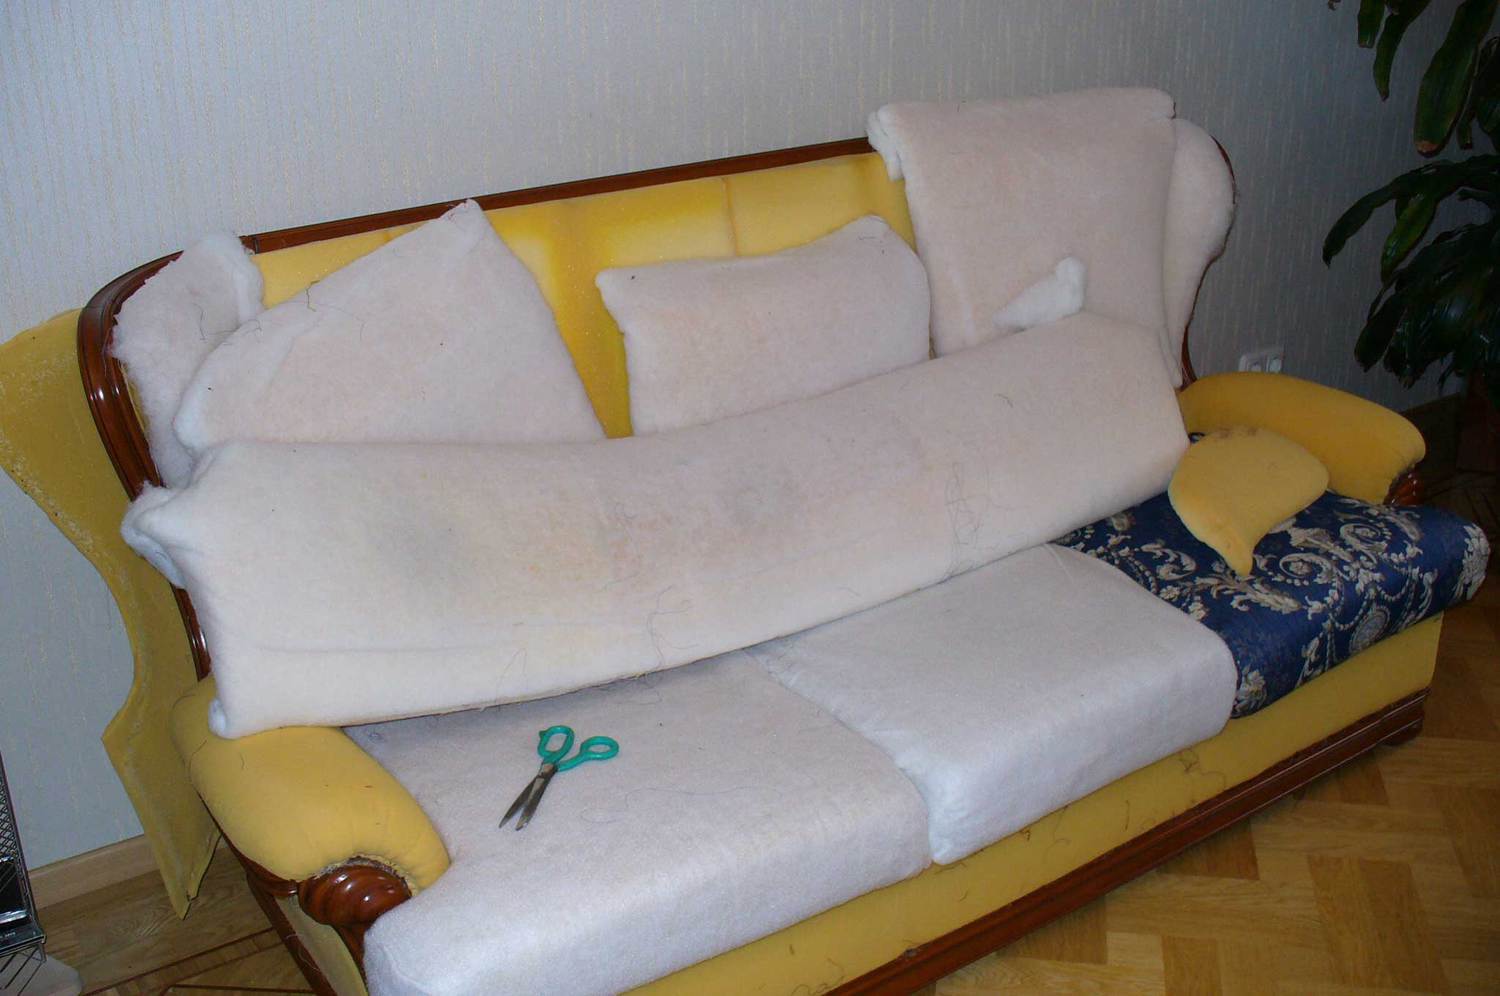 Ремонт дивана своими руками в домашних условиях: замена поролона, ремонт пружинного блока